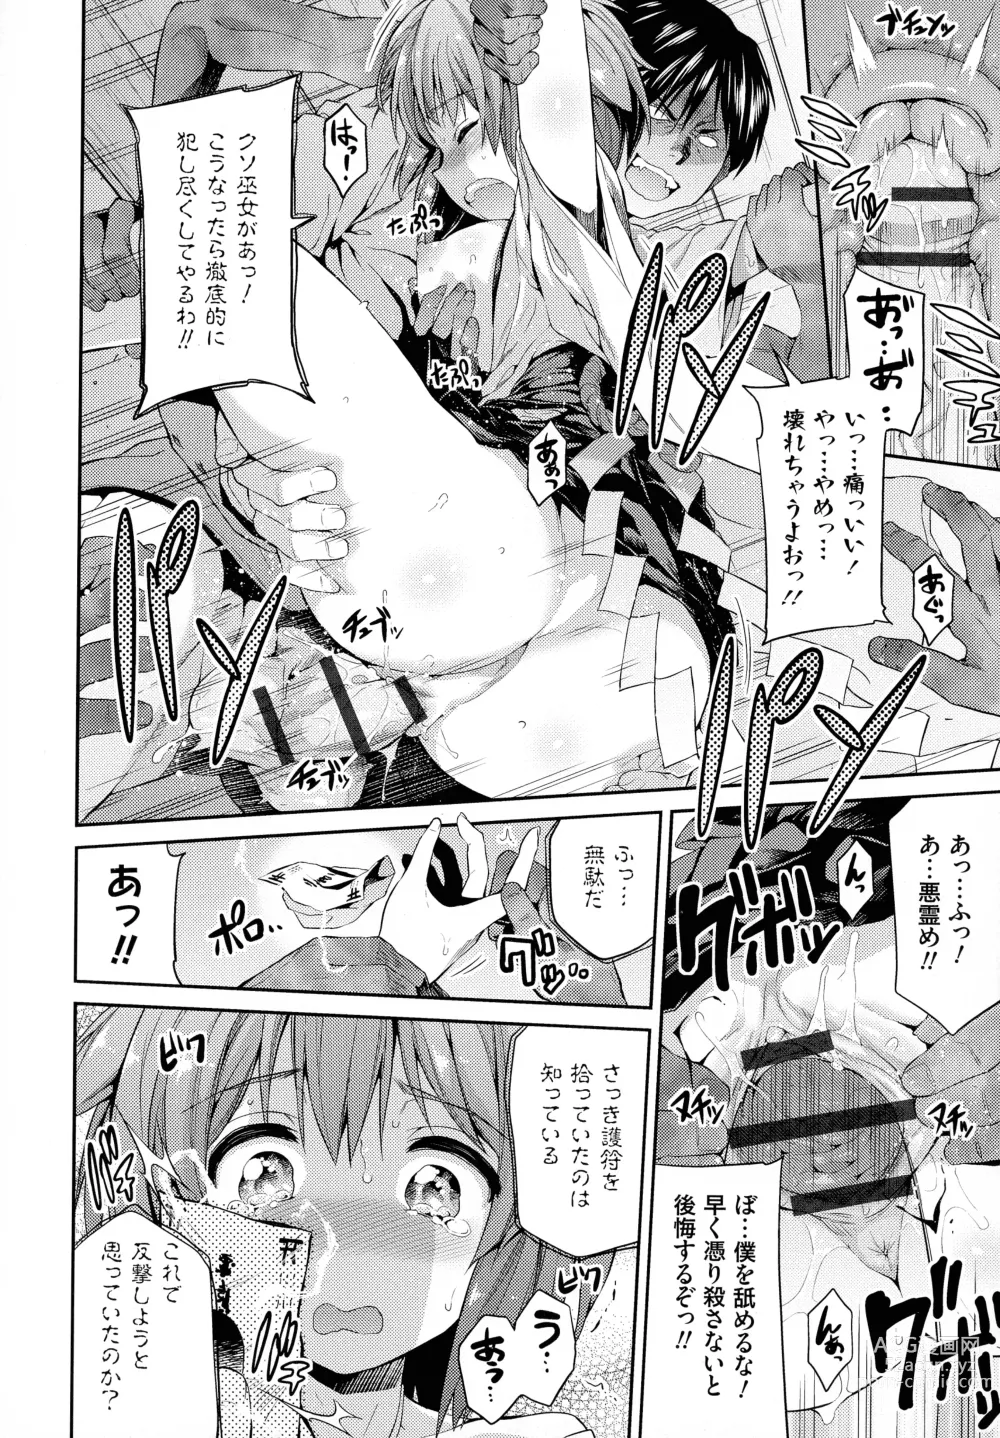 Page 19 of manga Hyoui Koukan